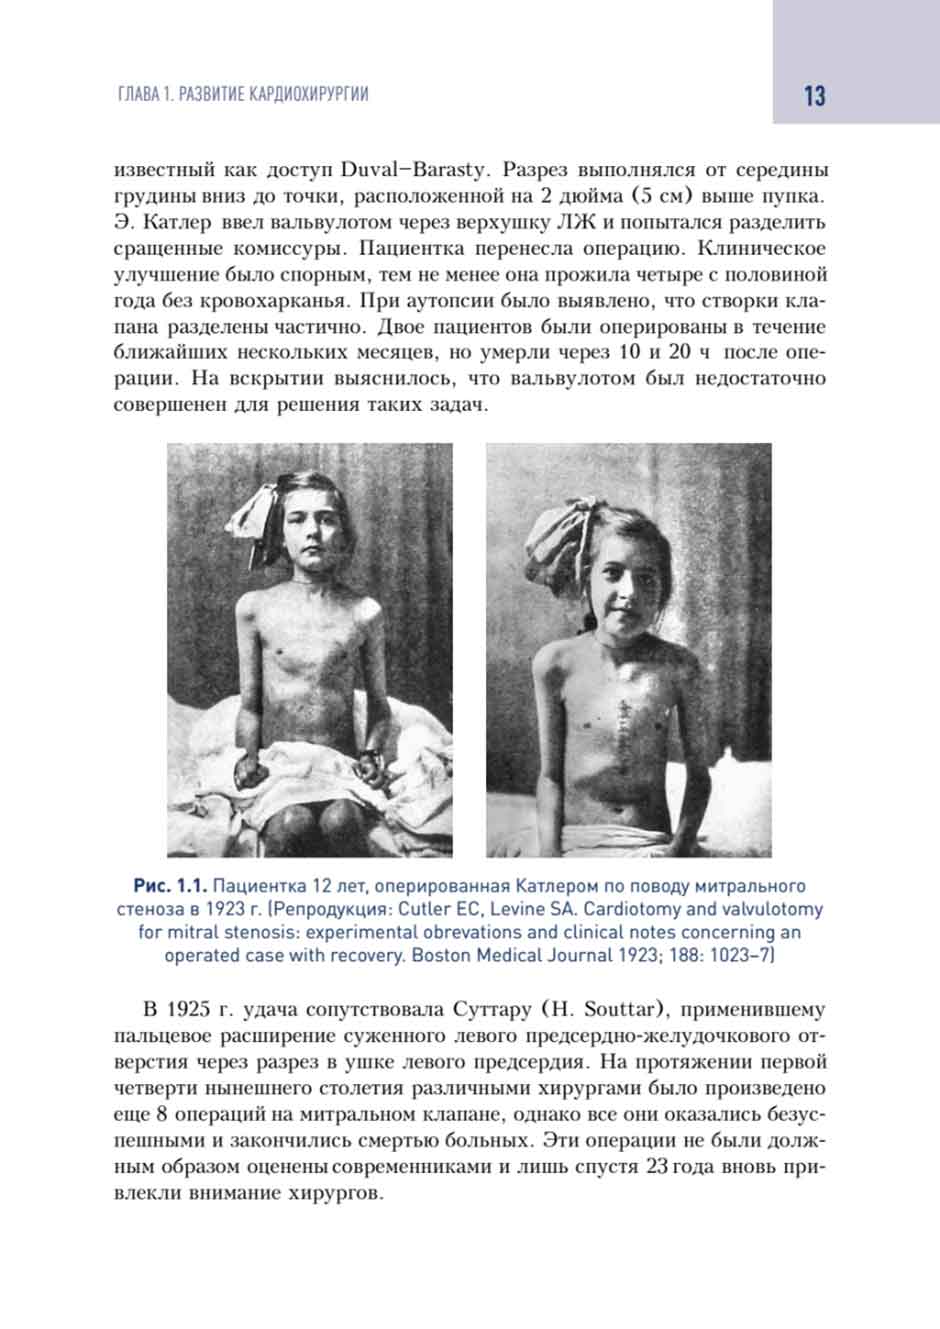 Рис. 1.1. Пациентка 12 лет. оперированная Катлером по поводу митрального стеноза в 1923 г. 